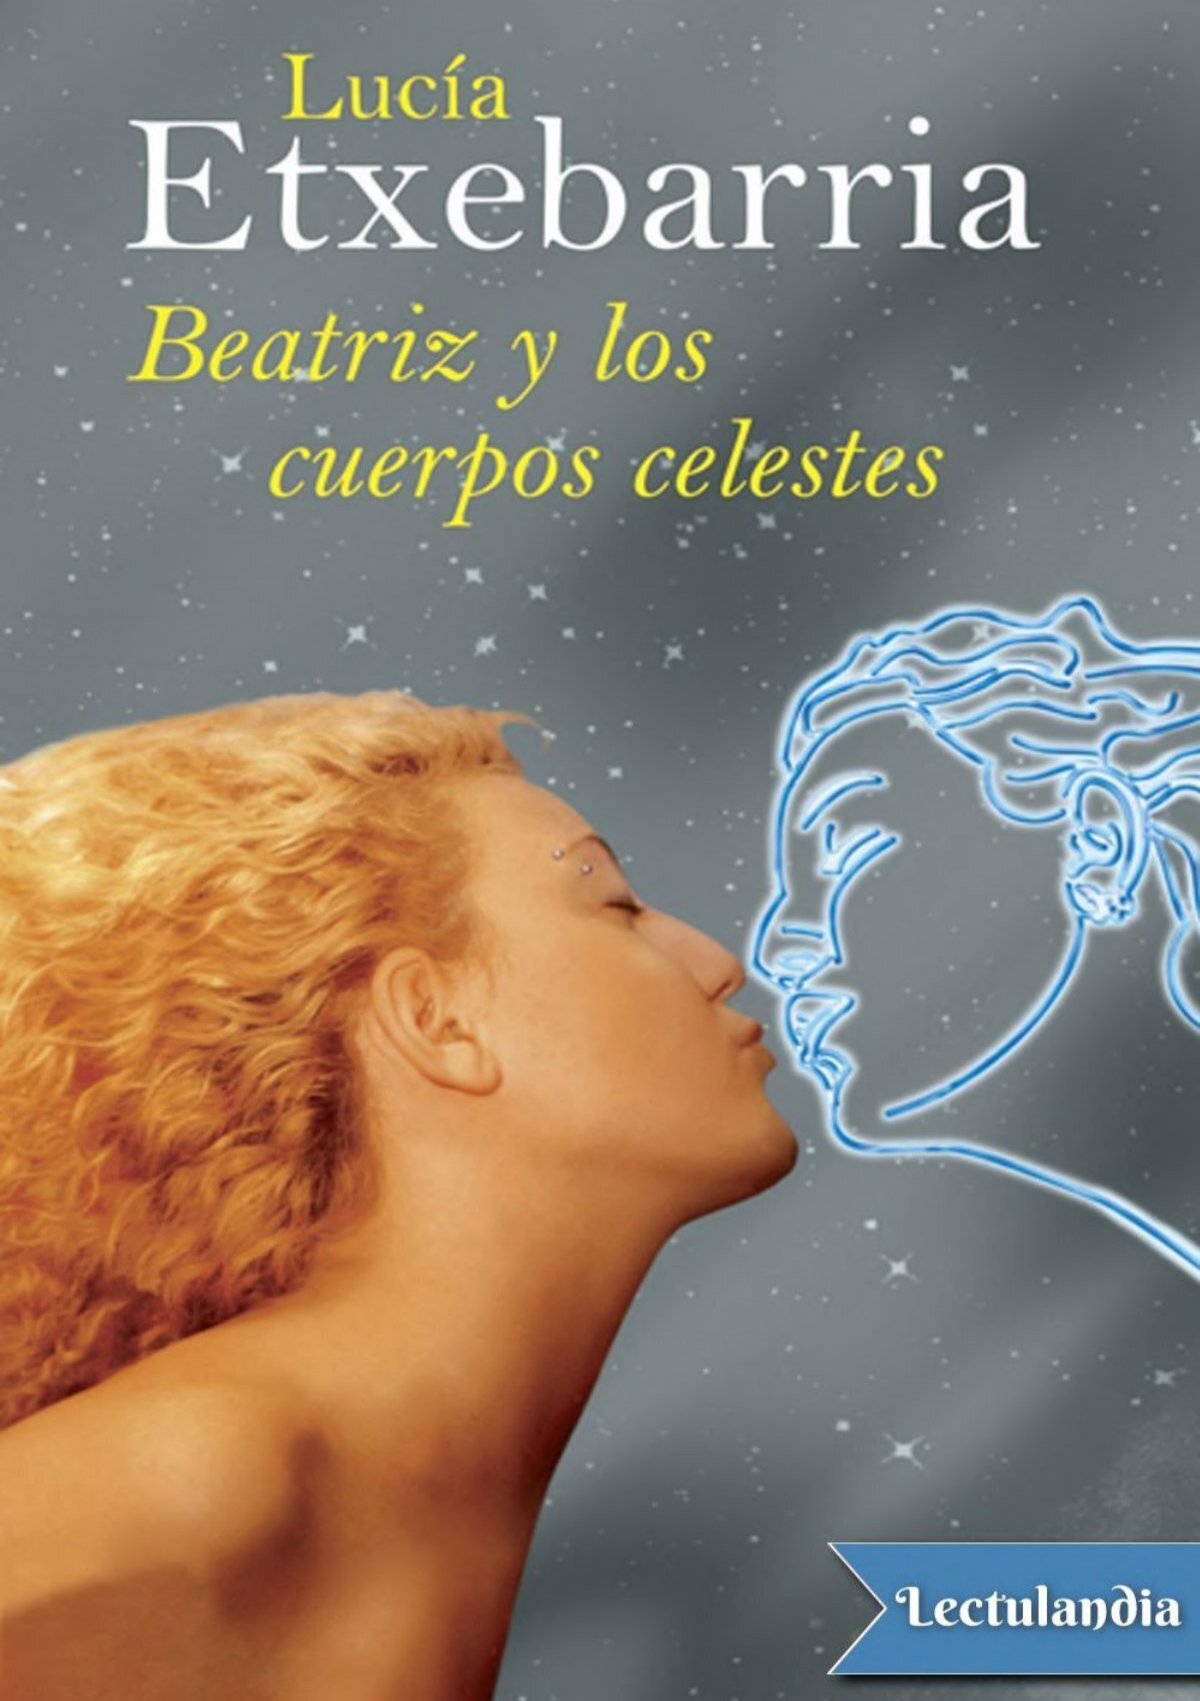 Beatriz y los cuerpos celestes - Lucia Etxebarria (Premio Nadal 1998)